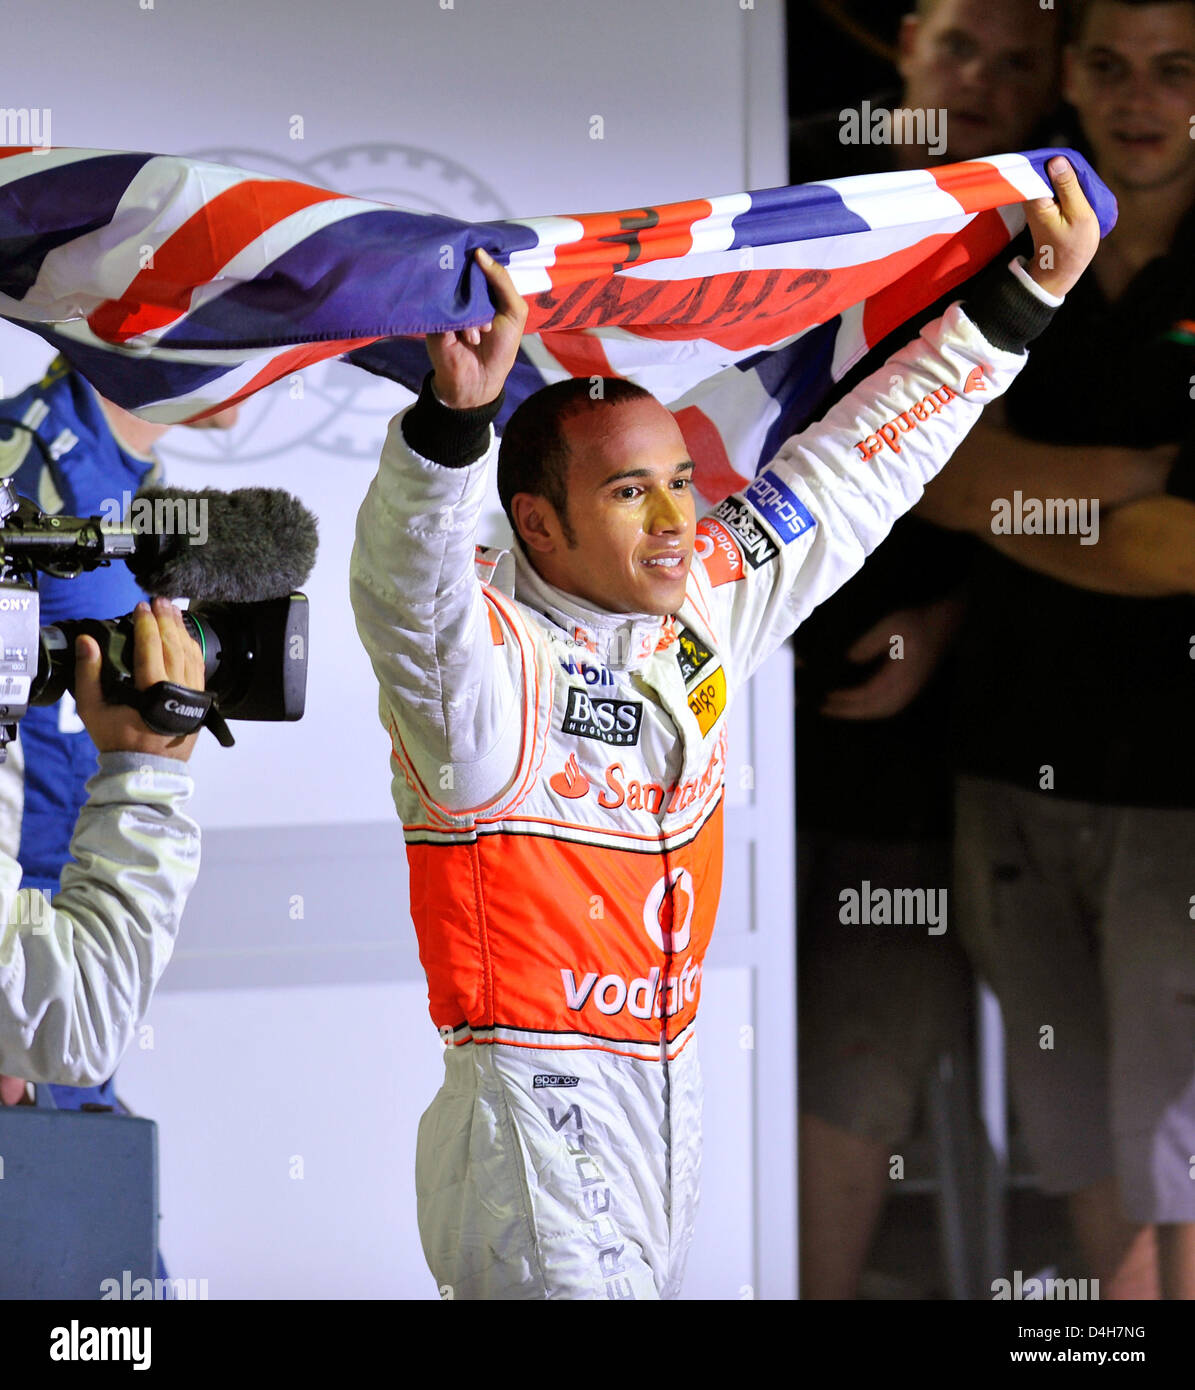 Britische Formel1-Fahrer Lewis Hamilton von McLaren Mercedes feiert seine Meisterschaft, nachdem der F1 Grand Prix von Brasilien auf der Rennstrecke verfolgen in Interlagos bei Sao Paulo in Brasilien, 2. November 2008. Hamilton wurde 5. und gewann den Titel. Foto: GERO BRELOER Stockfoto